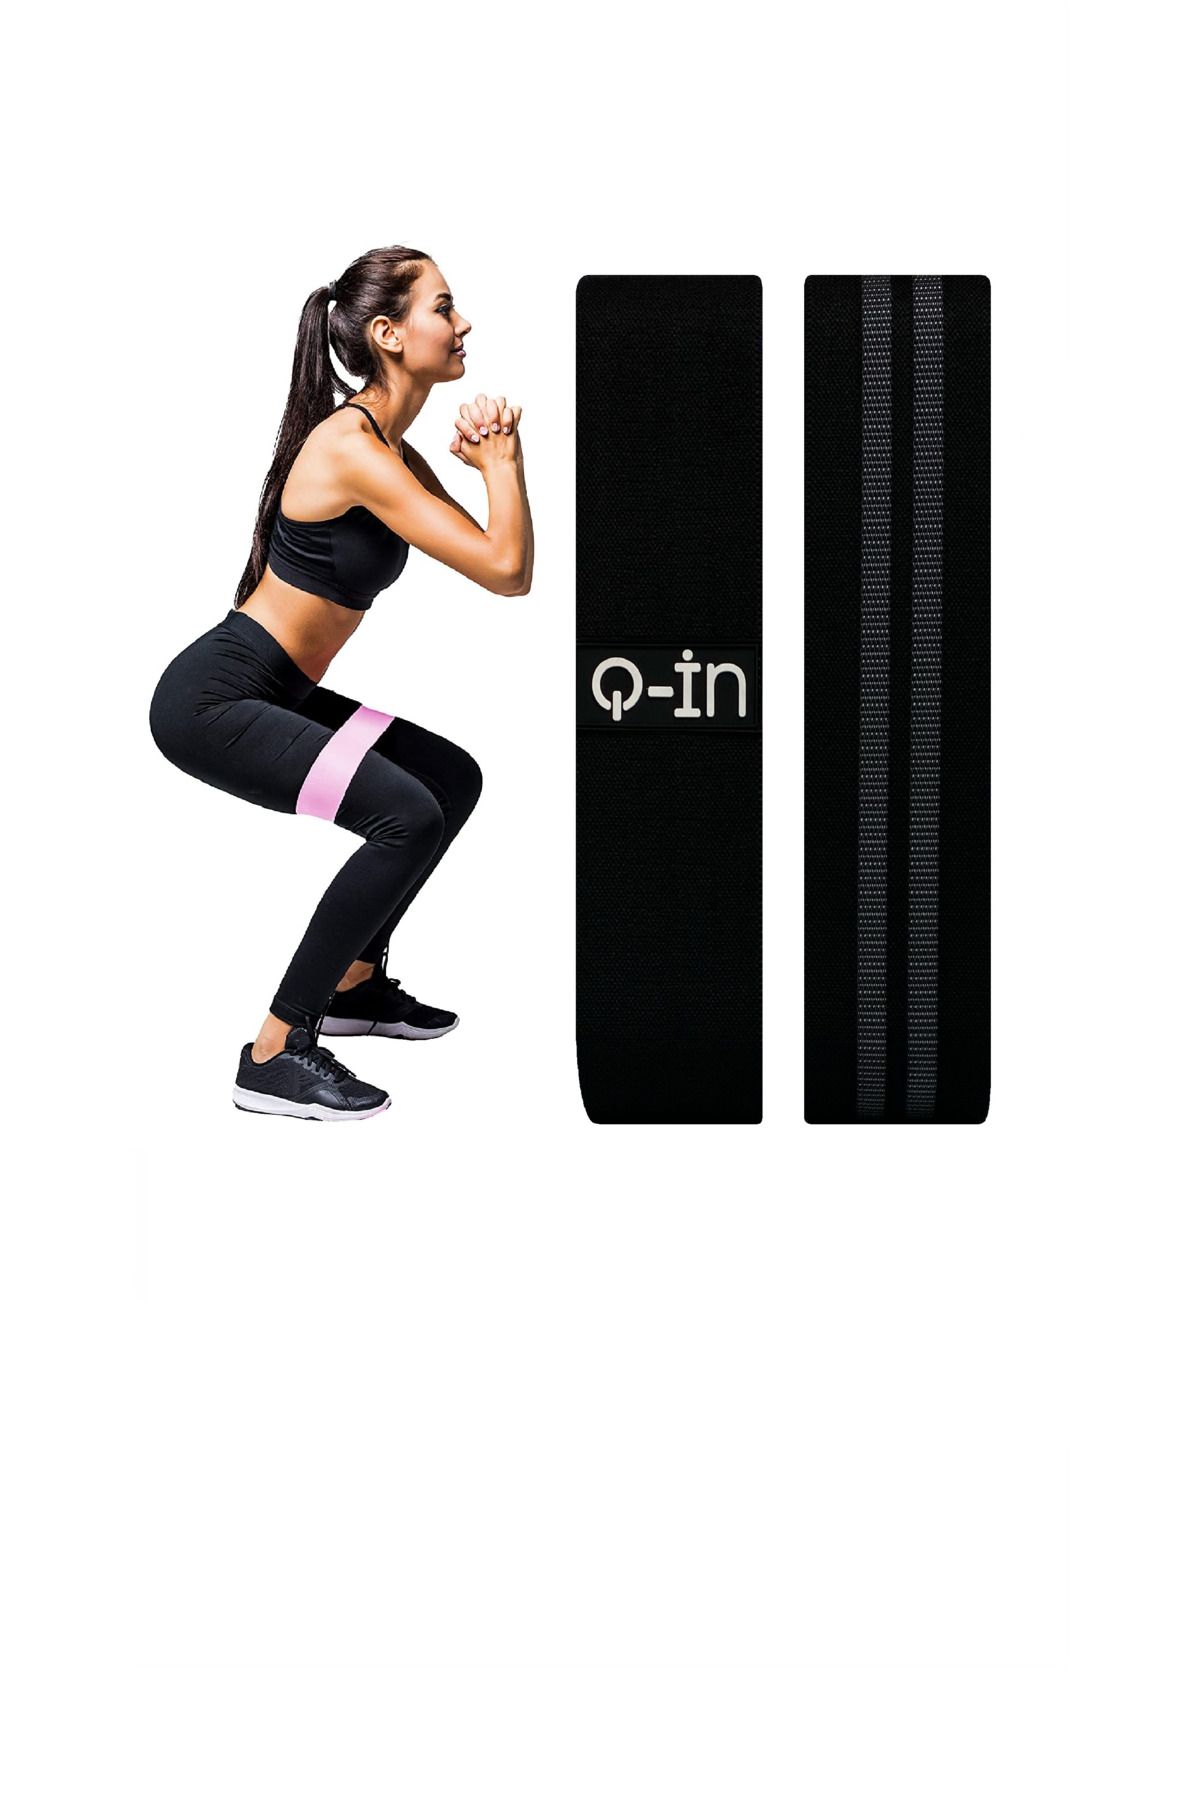 Q-İN Siyah Squat,plates,yoga ,fitness,kalça Şekil Ve Kas Güçlendirme Dokuma Direnç Bandı Lastiği